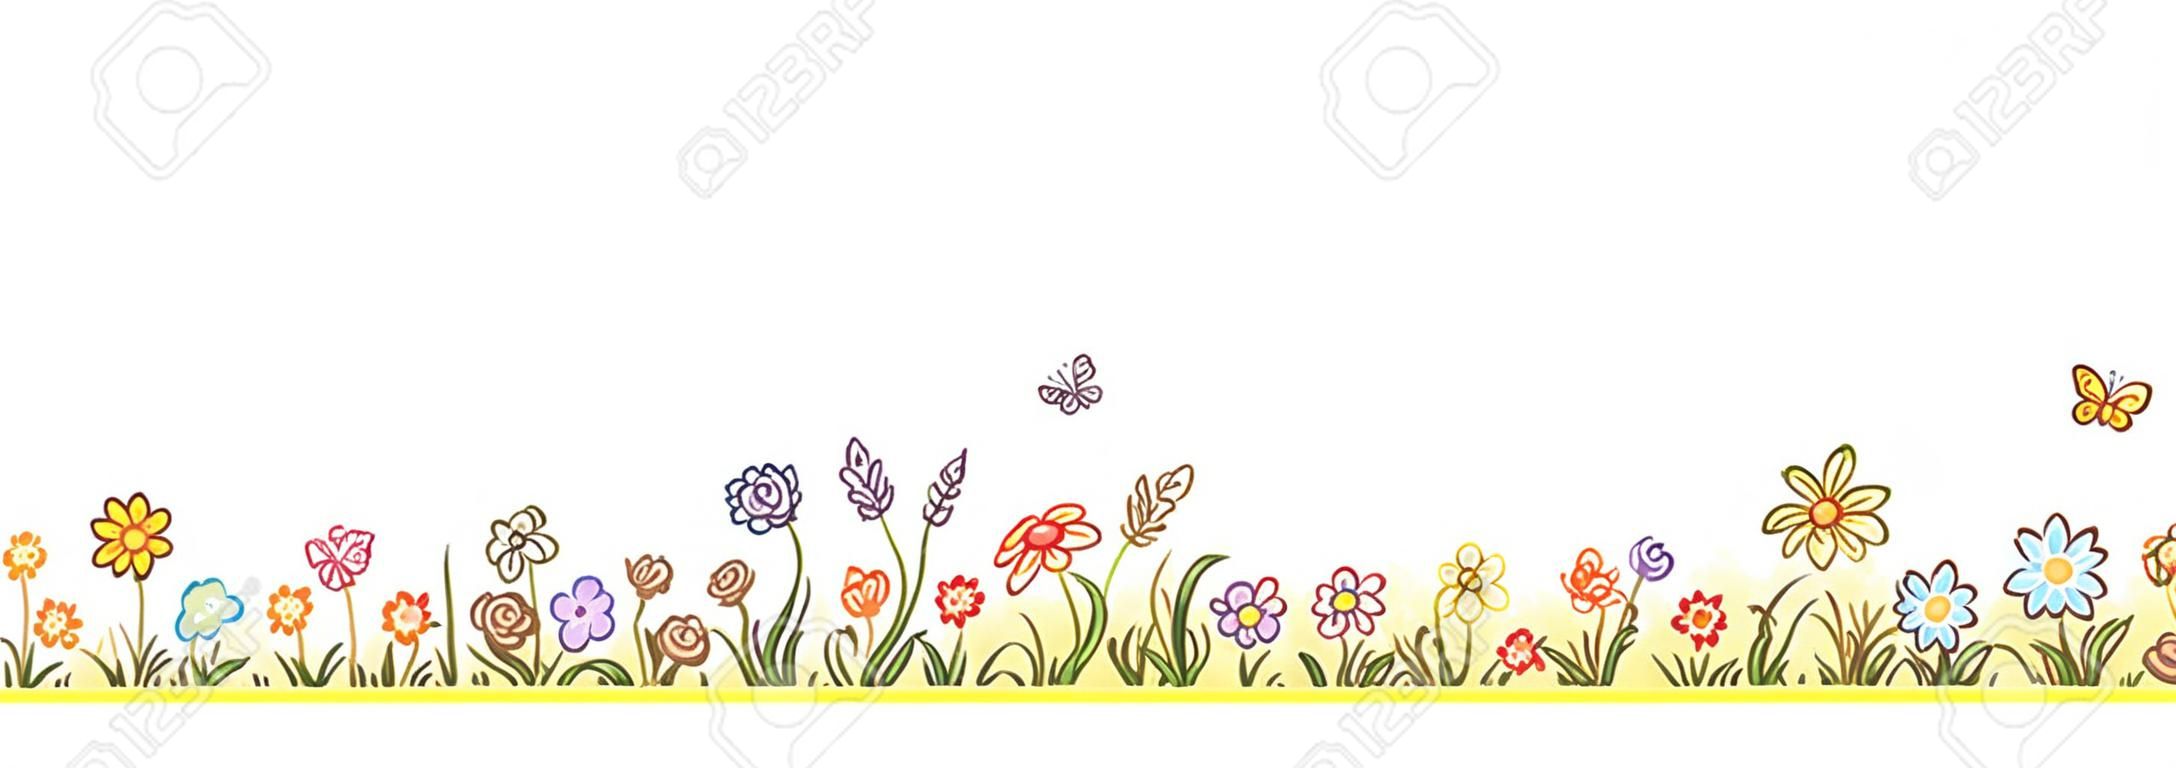 Kleurrijke bloemrand met veel cartoon bloemen, gras en vlinders, geen gradiënten